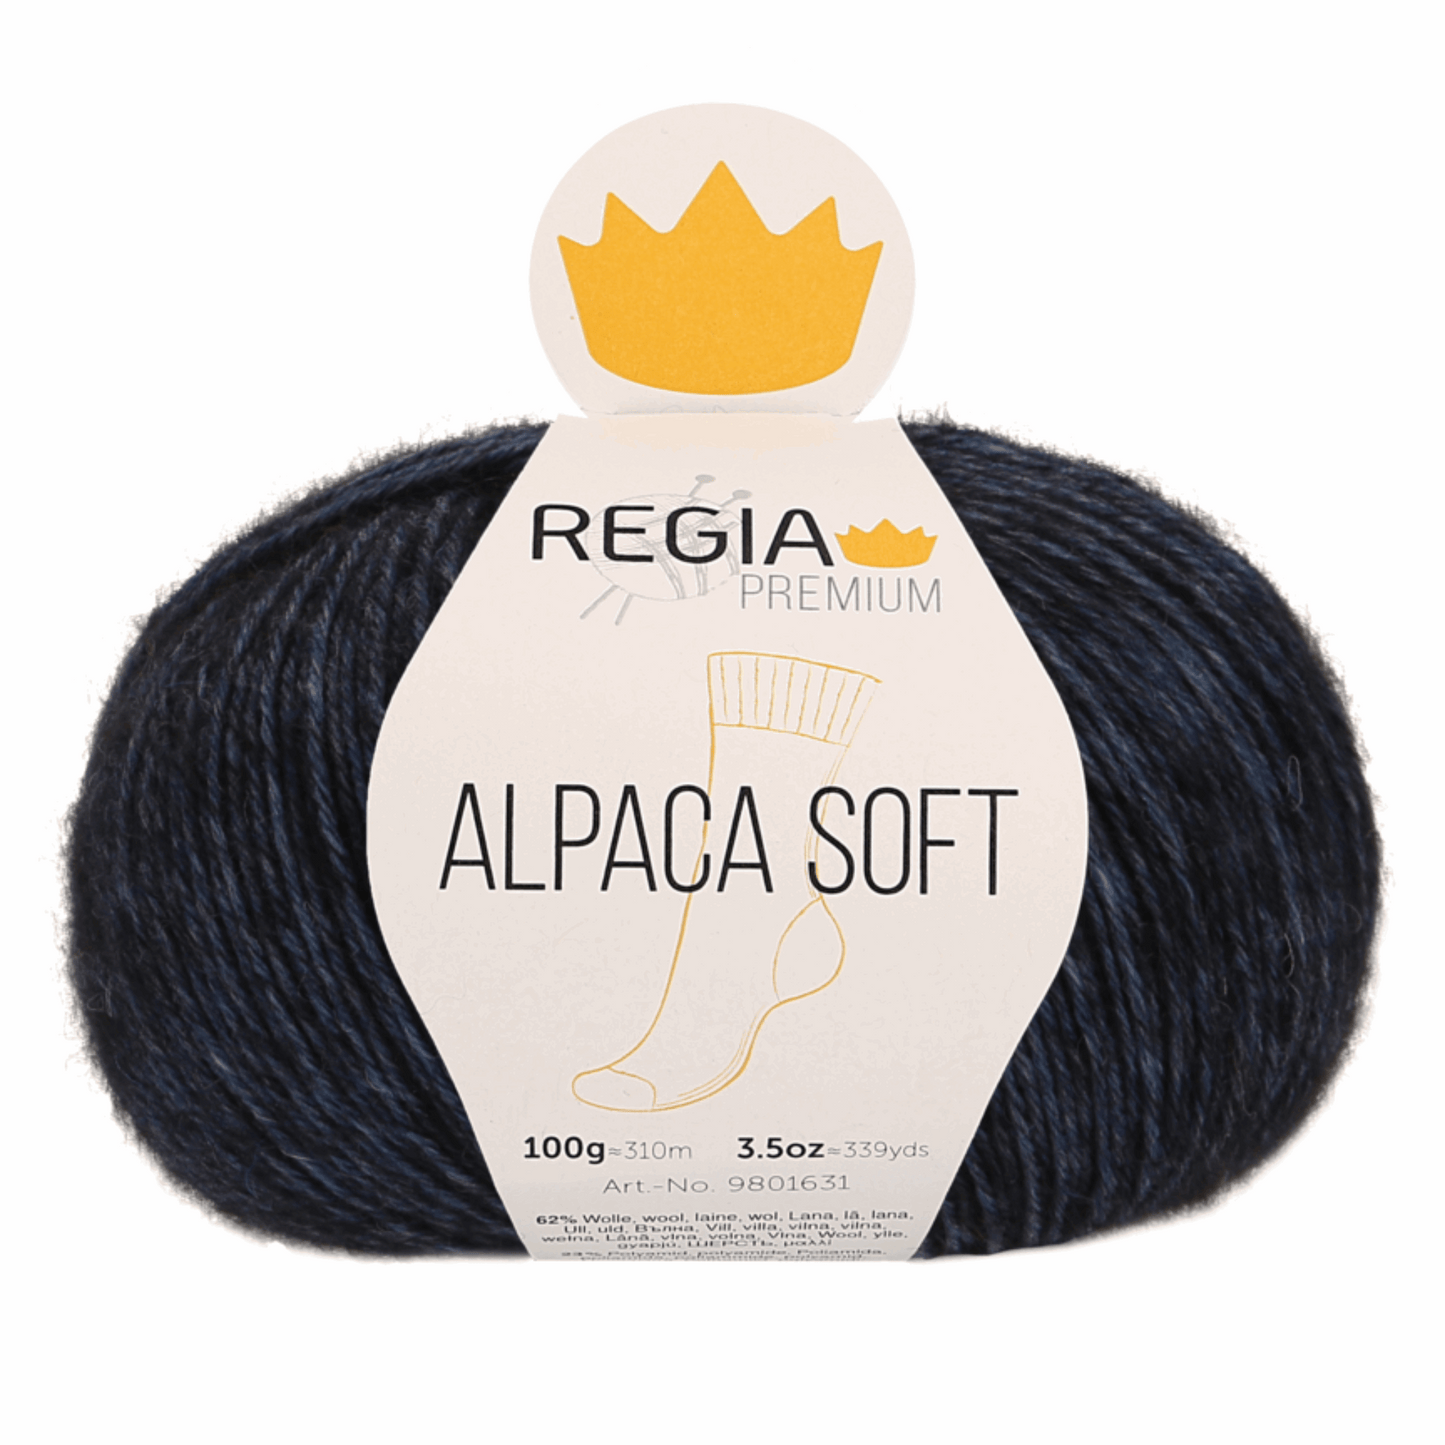 Regia Alpaca Soft 100g, 90631, color night blue me 55